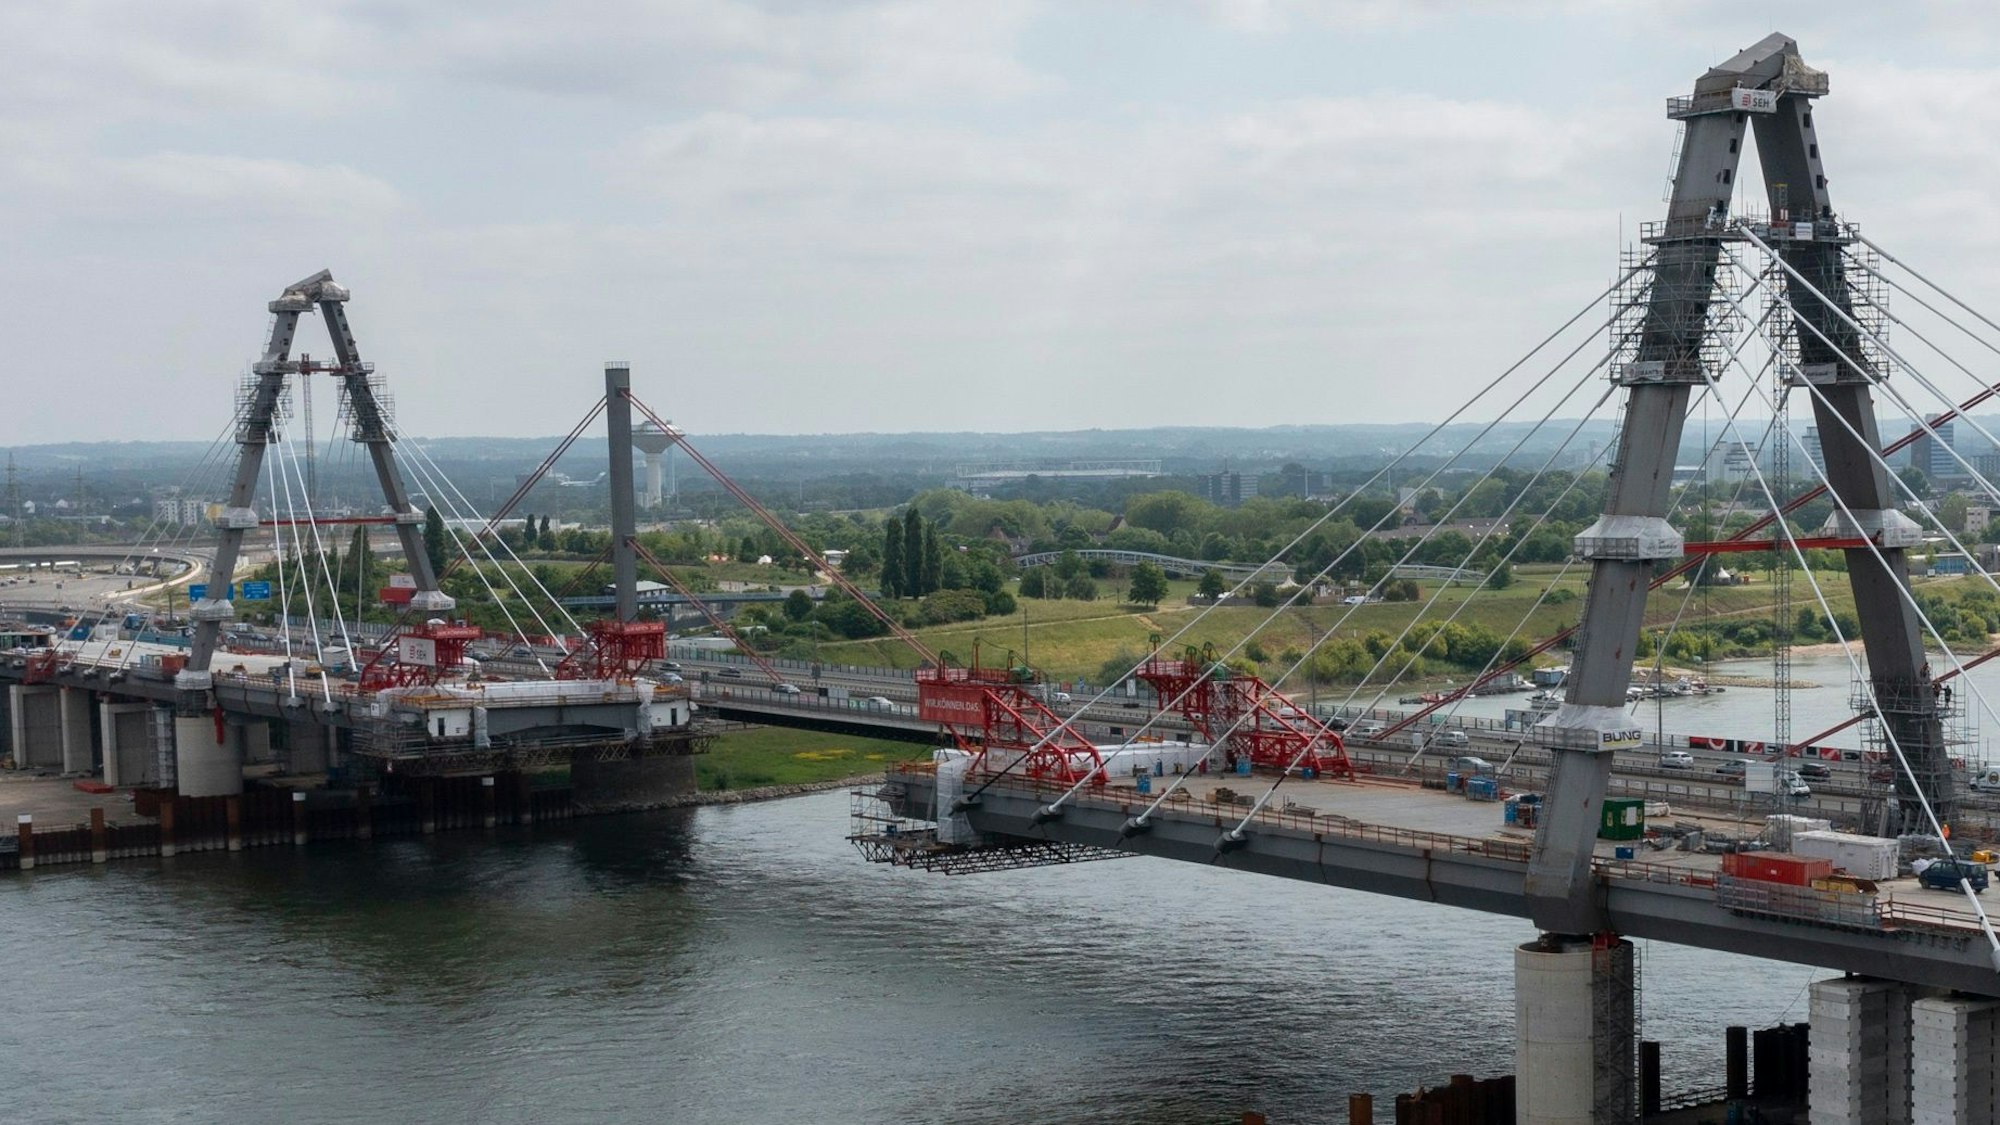 Blick auf die im Bau befindliche neue Leverkusener Autobahnbrücke.
 Foto: Uwe Weiser